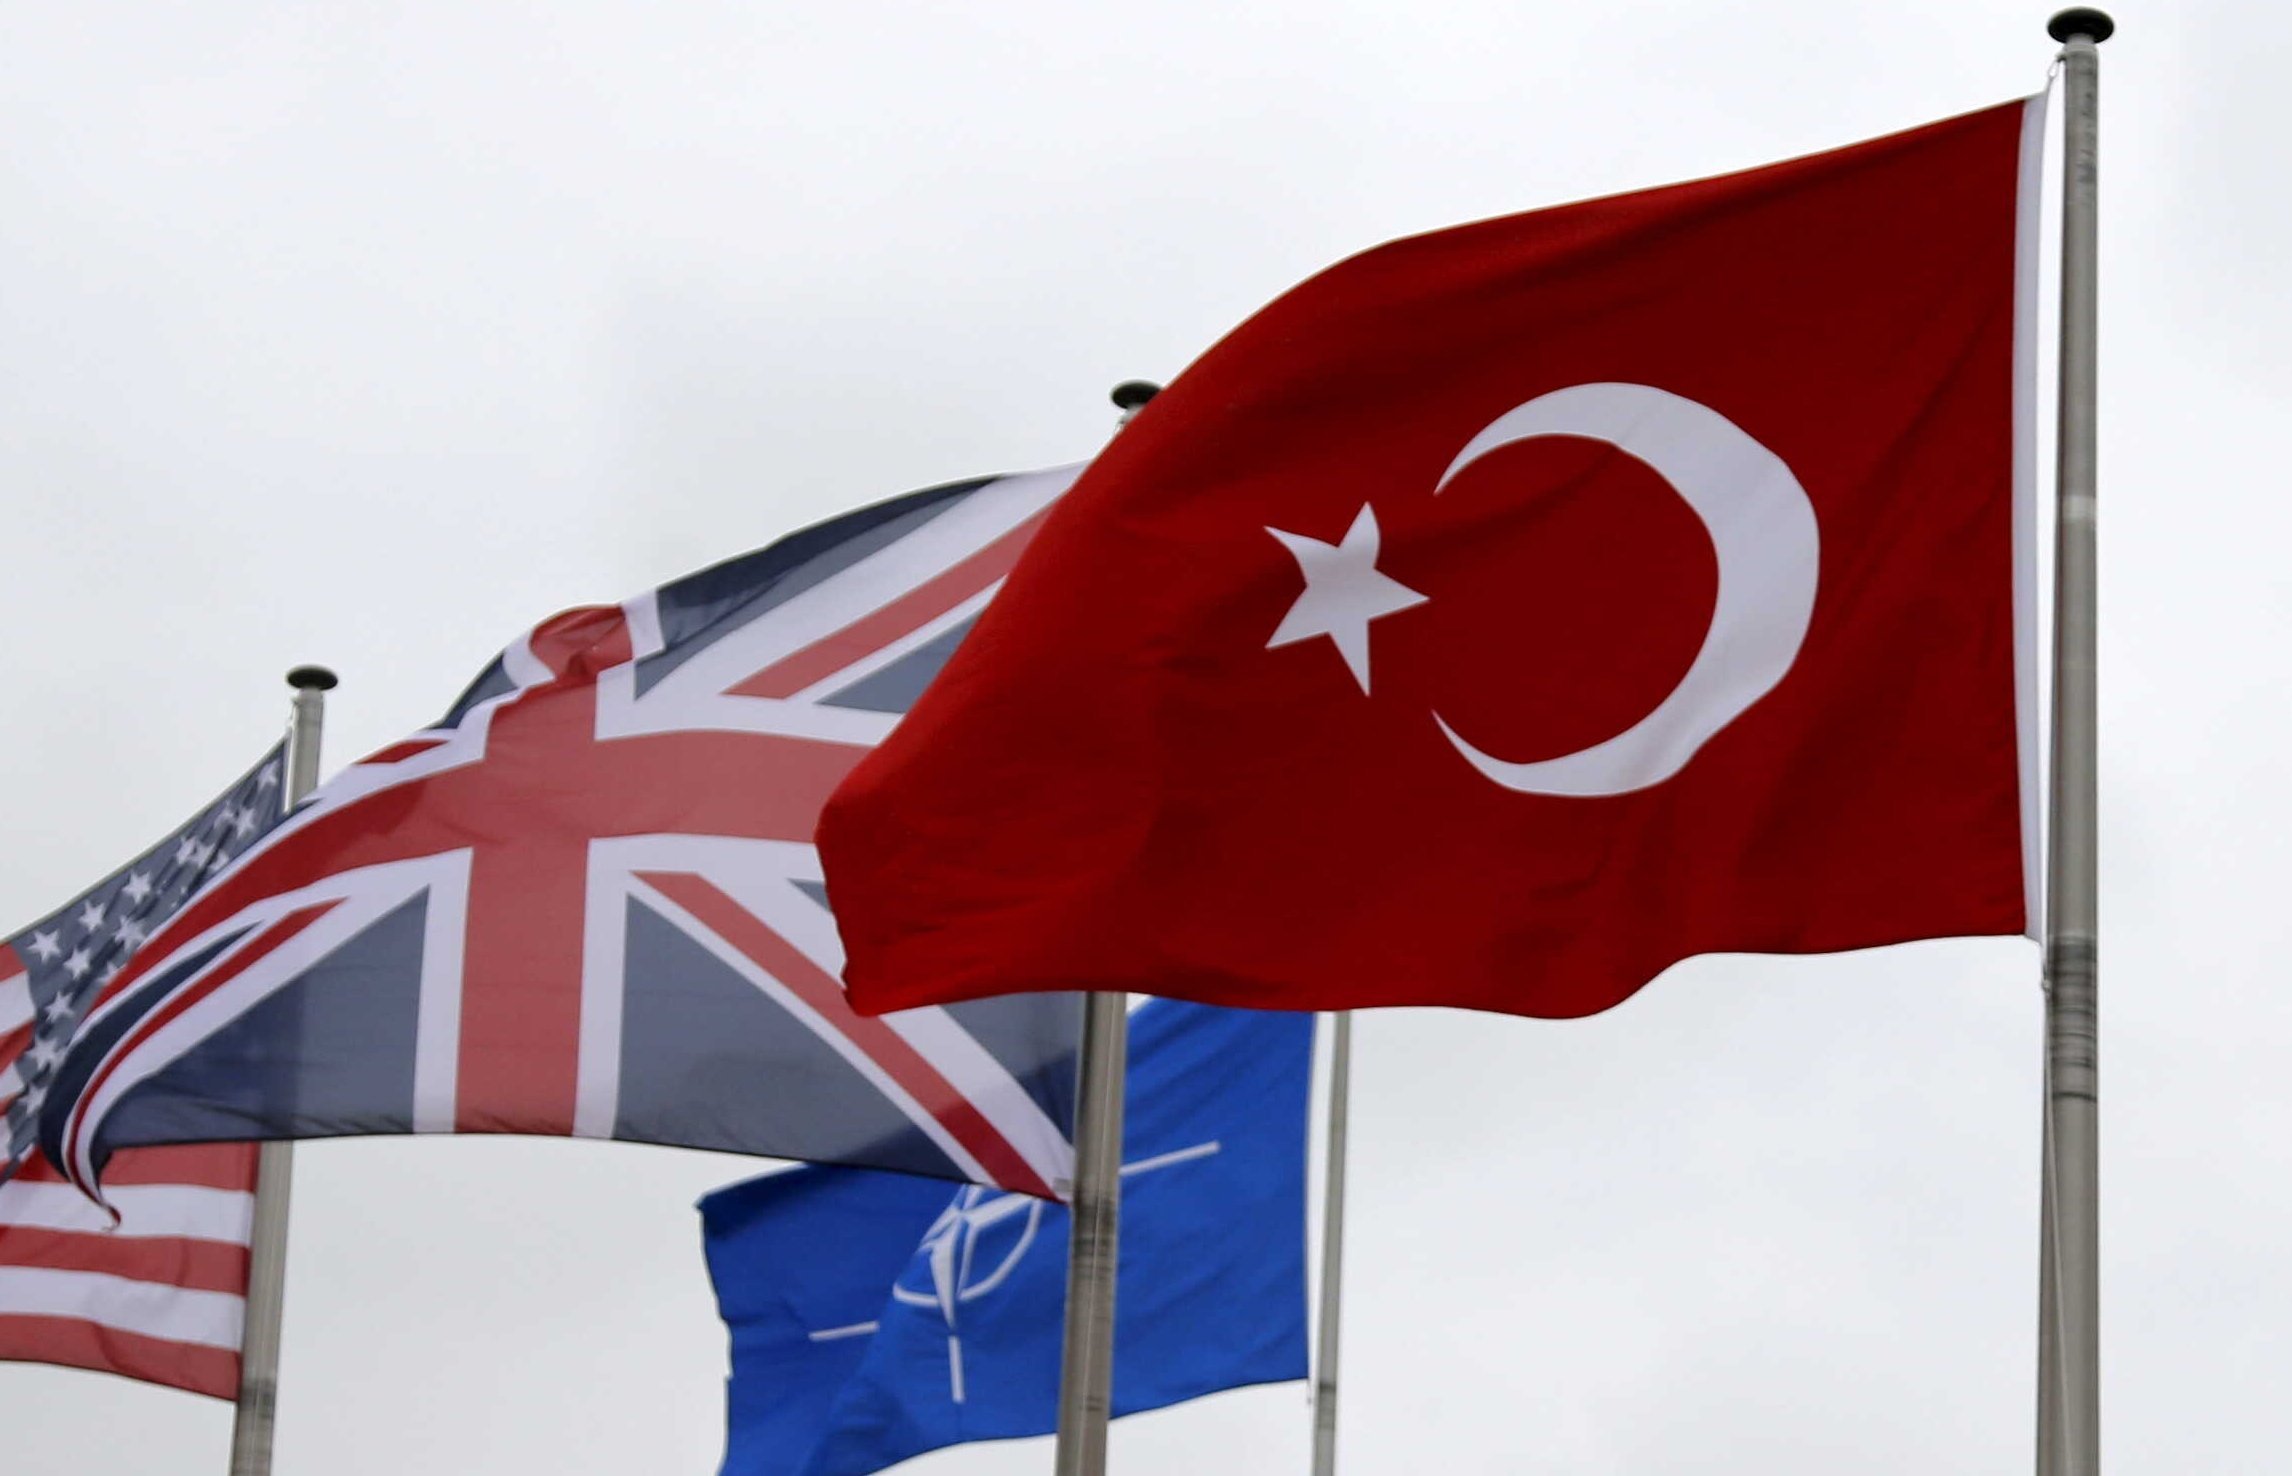 Βρετανικό «lockdown» και περίσφιξη της Κυπριακής Δημοκρατίας, ενόψει Πενταμερούς